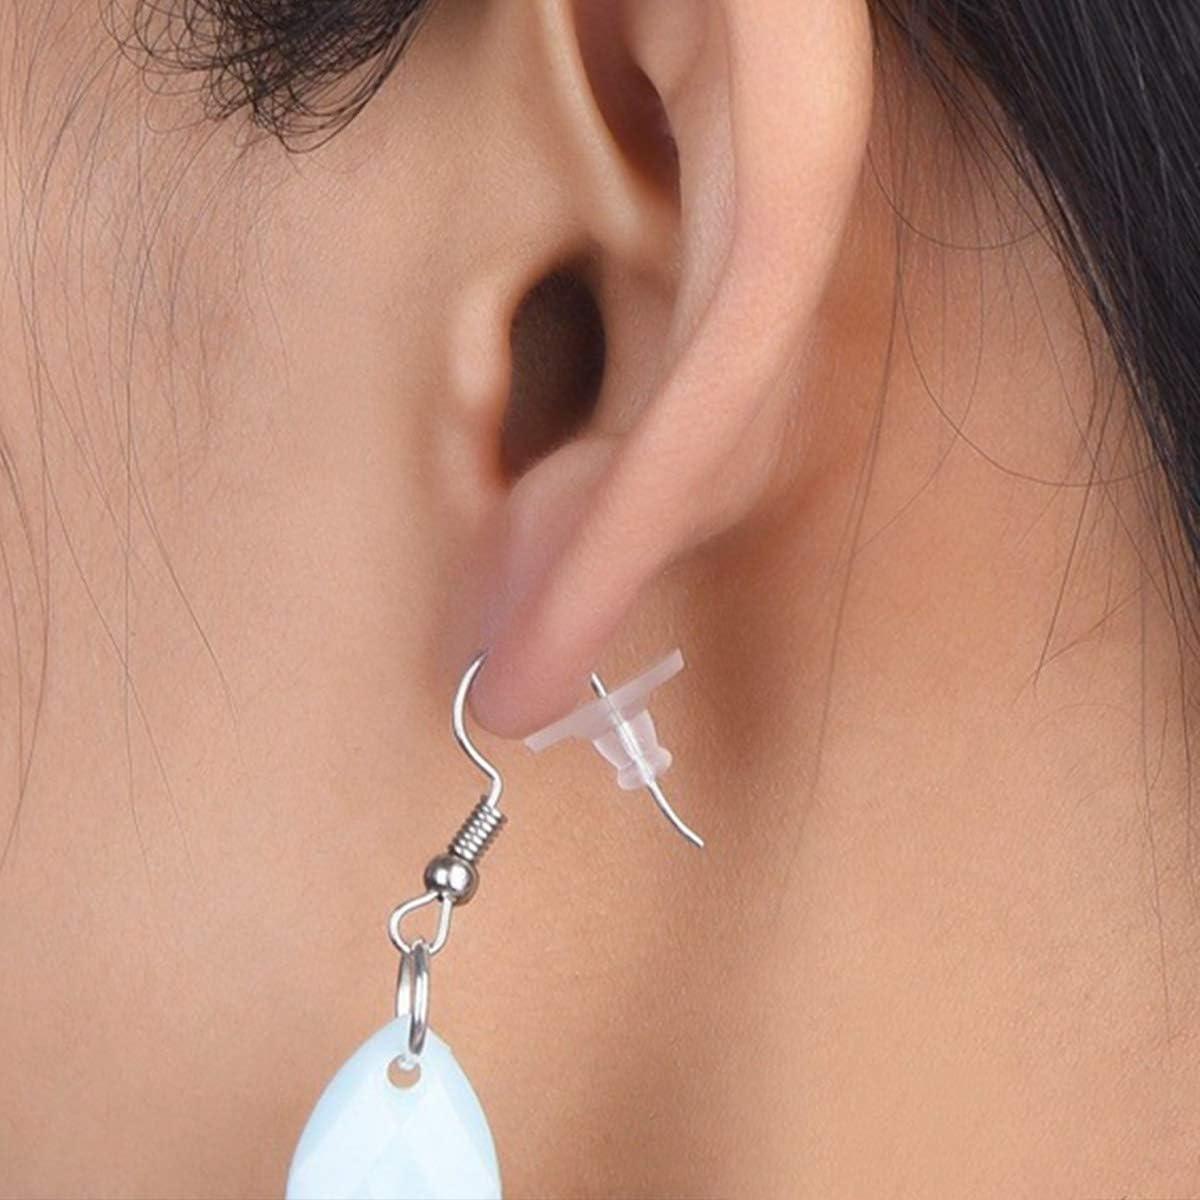 Earring Backs,Back Earrings Earring Backings Earring Backs Rubber Earring  Backs Replacements Back Earrings for Women (100)